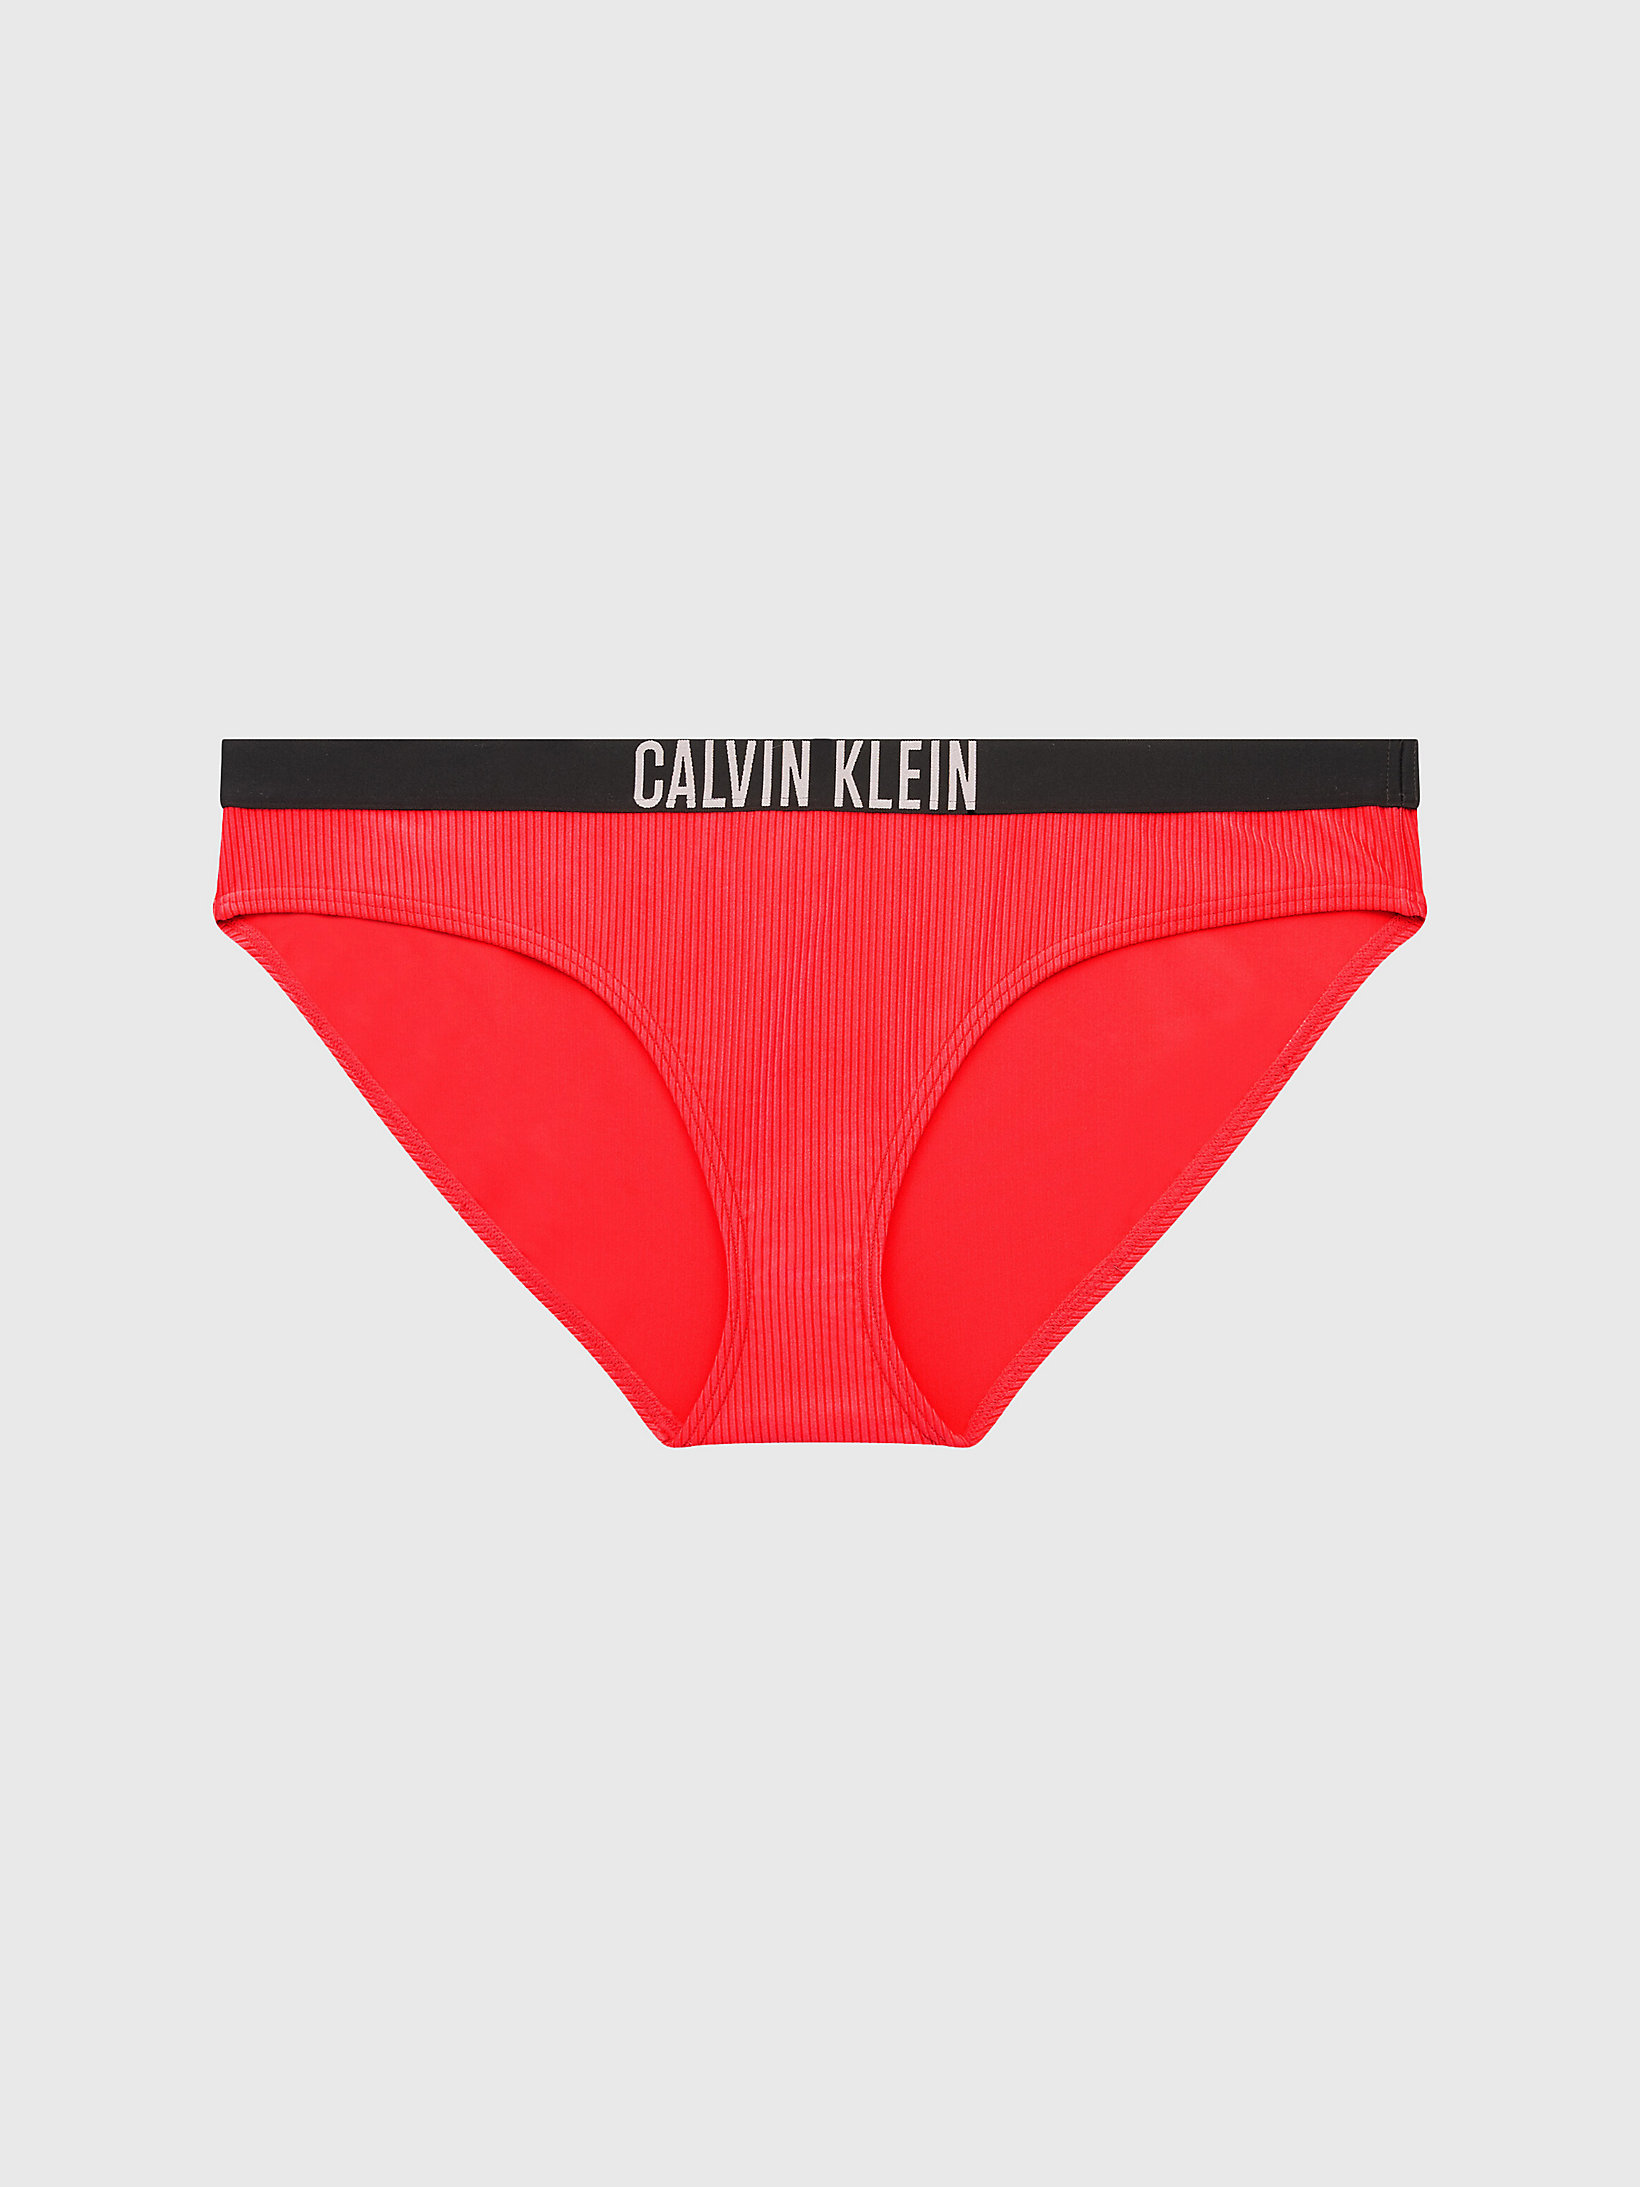 Coral Crush > Bikinihose In Großen Größen - Intense Power > undefined Damen - Calvin Klein